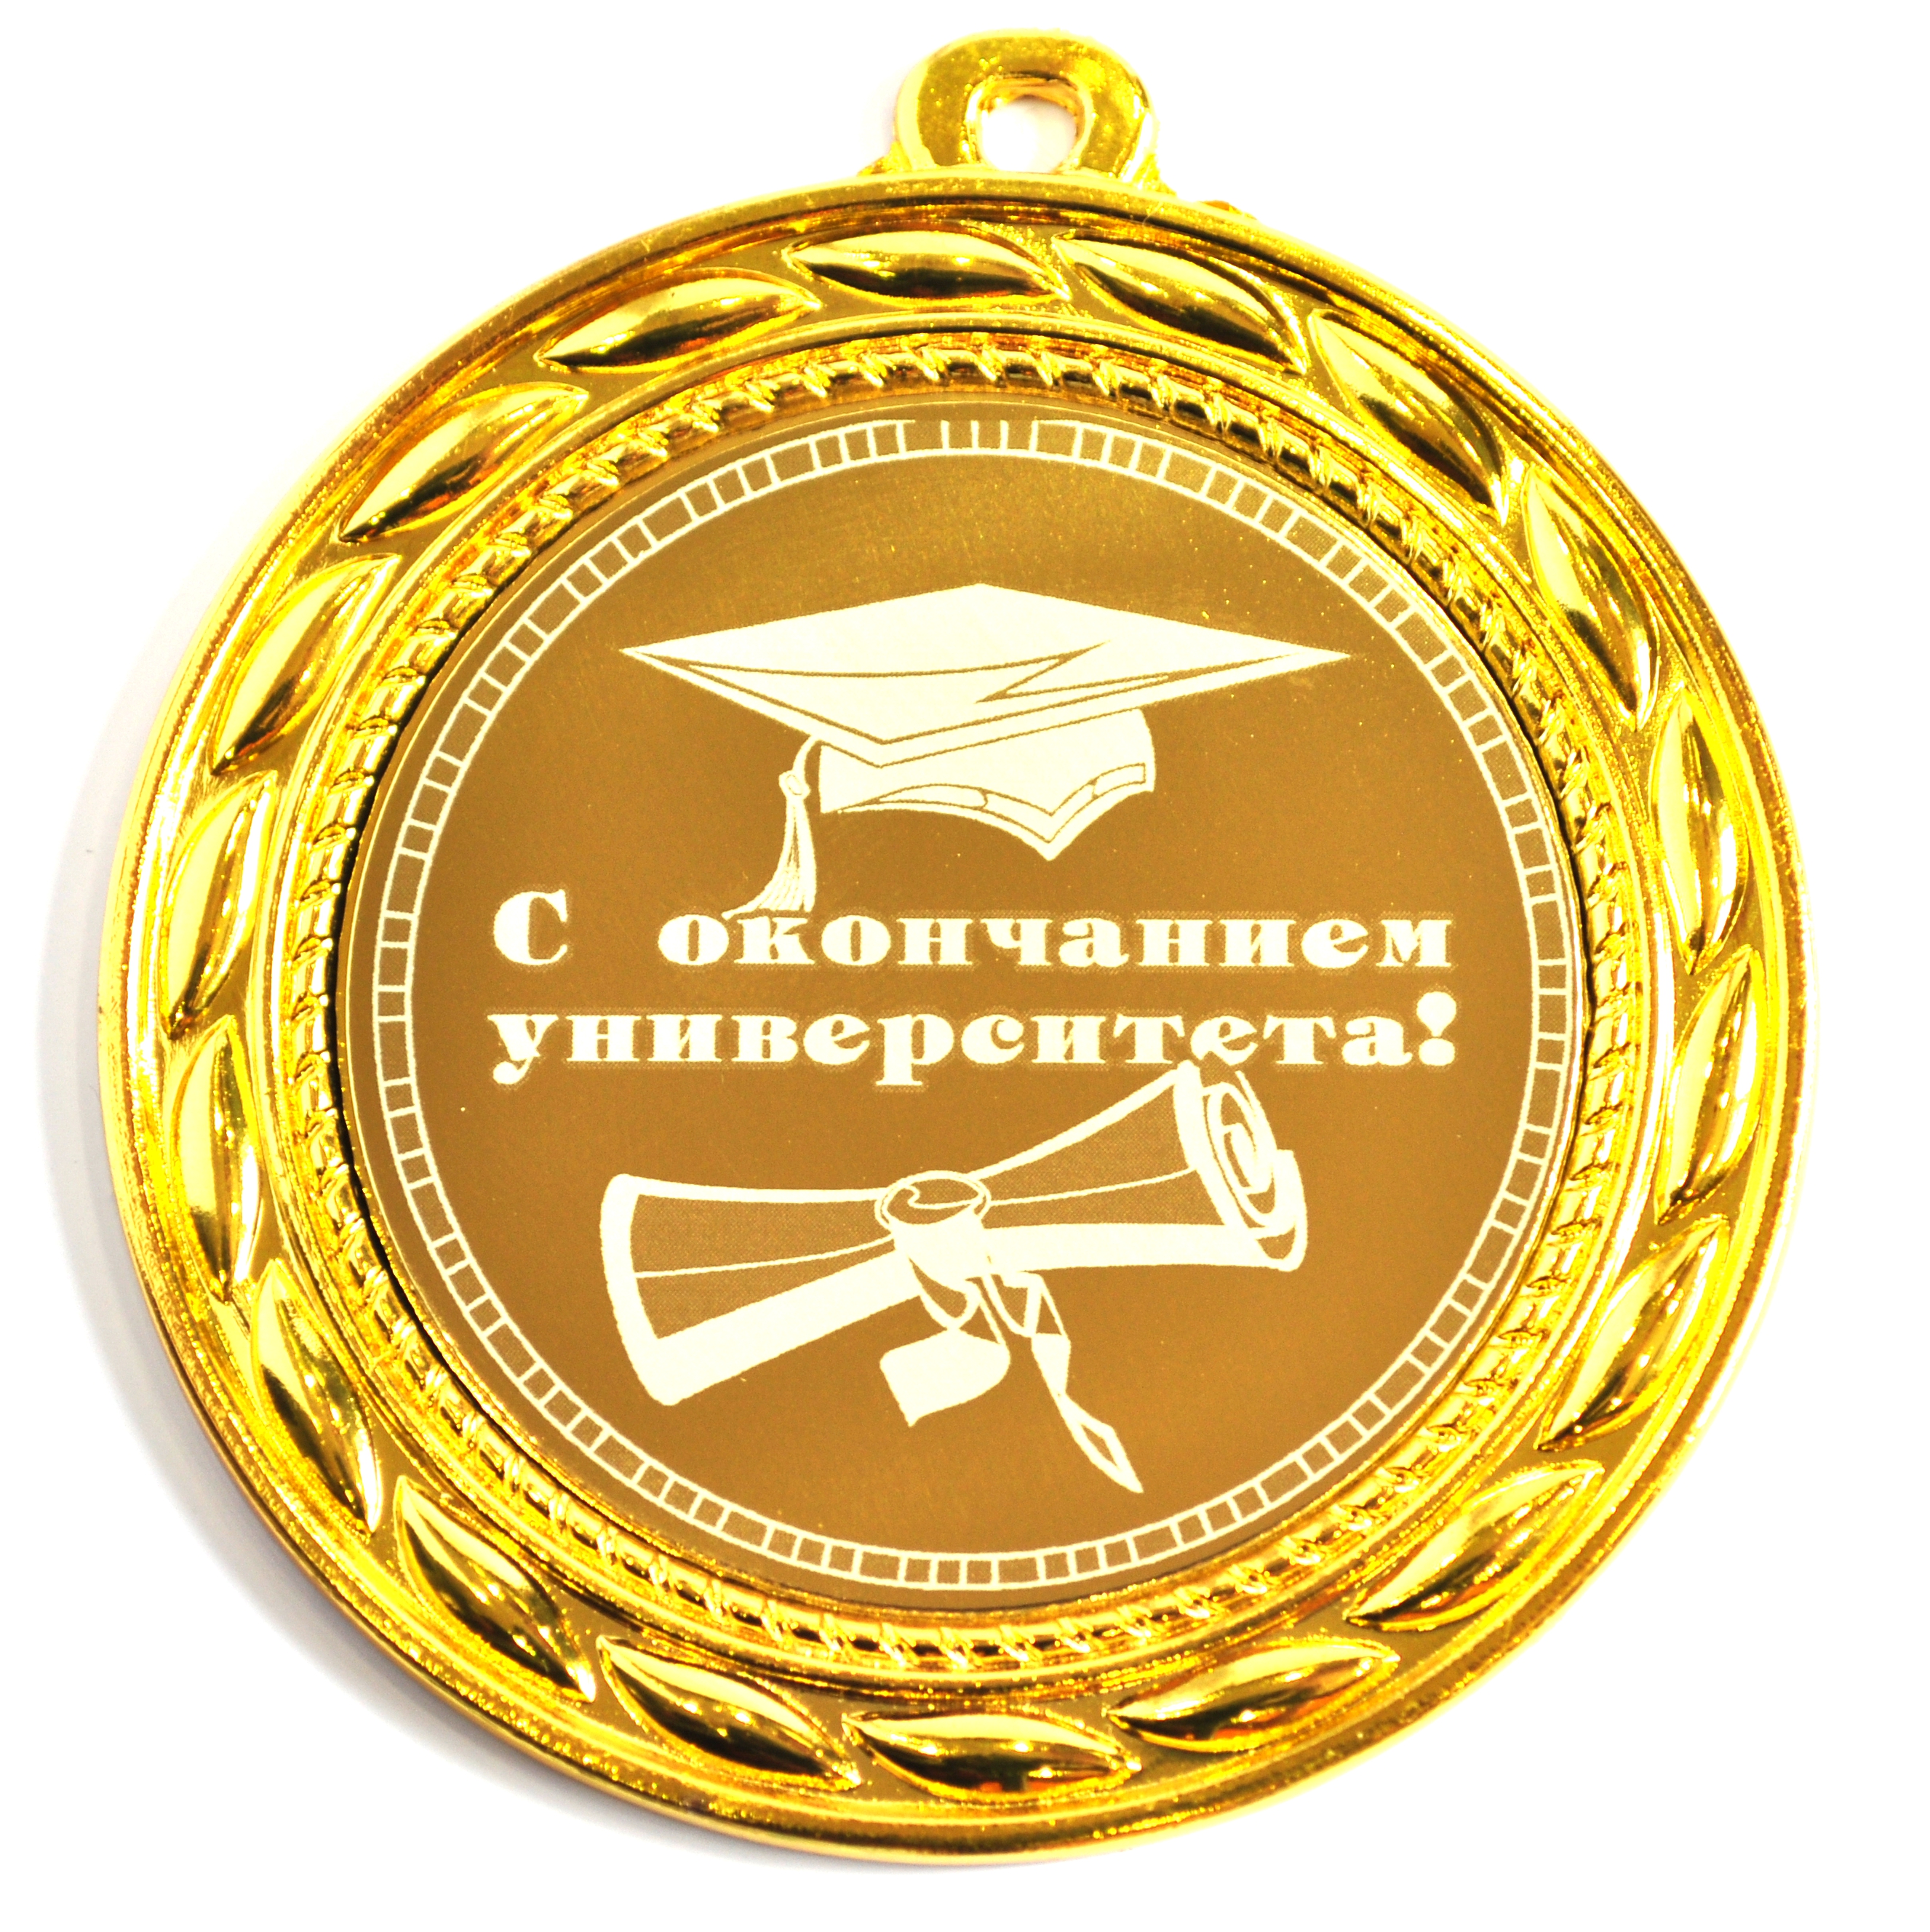 Поздравляю с получением диплома